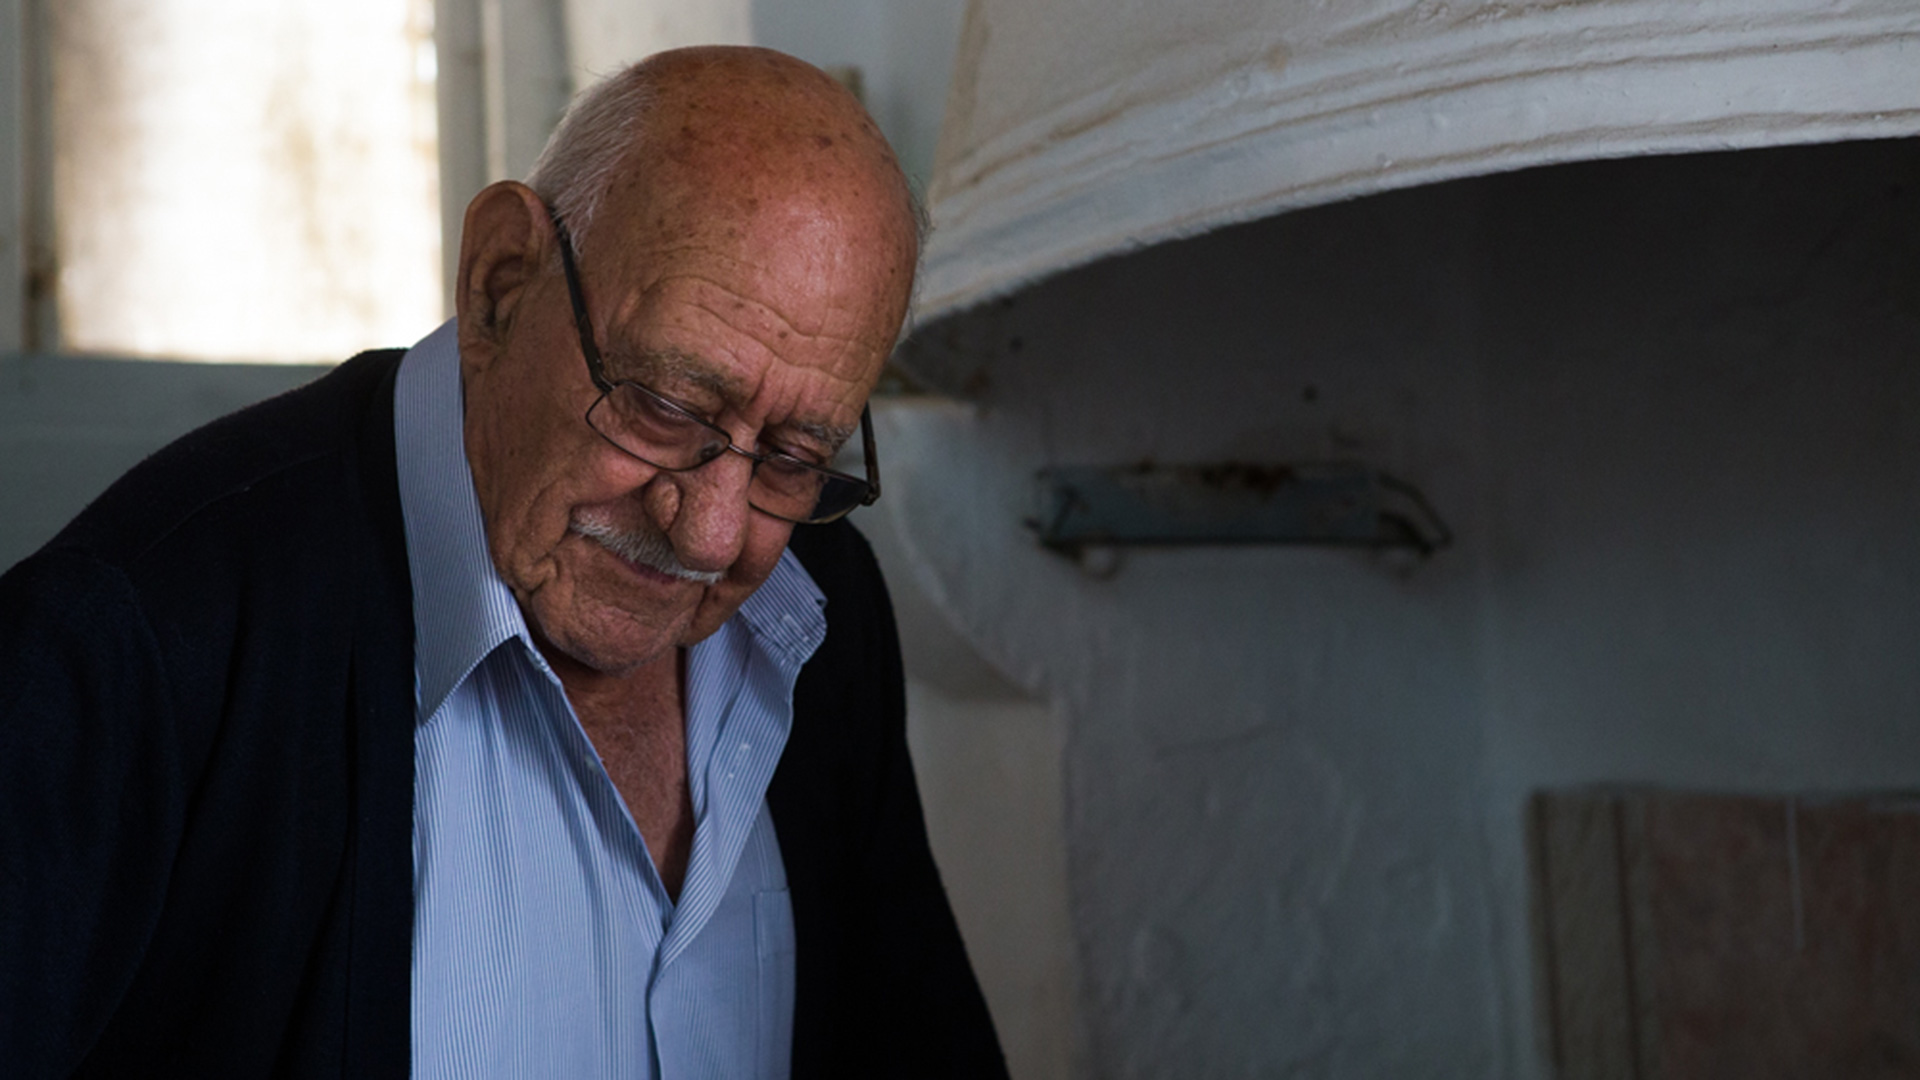 Αλέκος Φραγκιαδάκης - Ένας Κρητικός ντελικανής, ετών 90 παρά κάτι